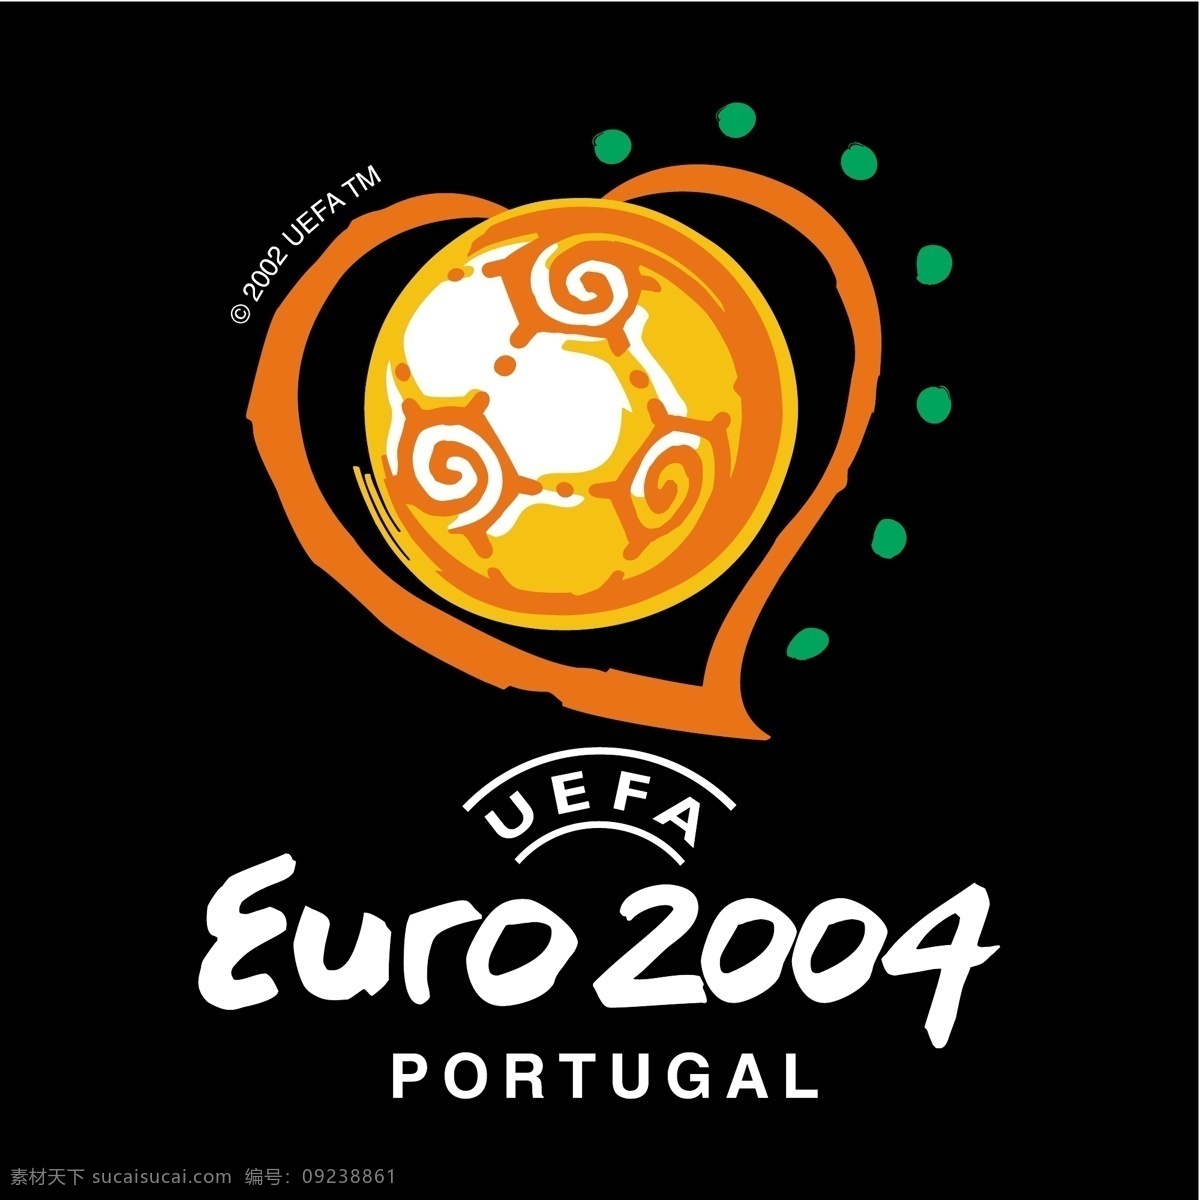 欧洲杯 2004 葡萄牙 标志 欧 欧元 欧足联的欧元 向量 向量的欧洲杯 葡萄牙欧洲杯 矢量 标志欧洲杯 矢量图 建筑家居